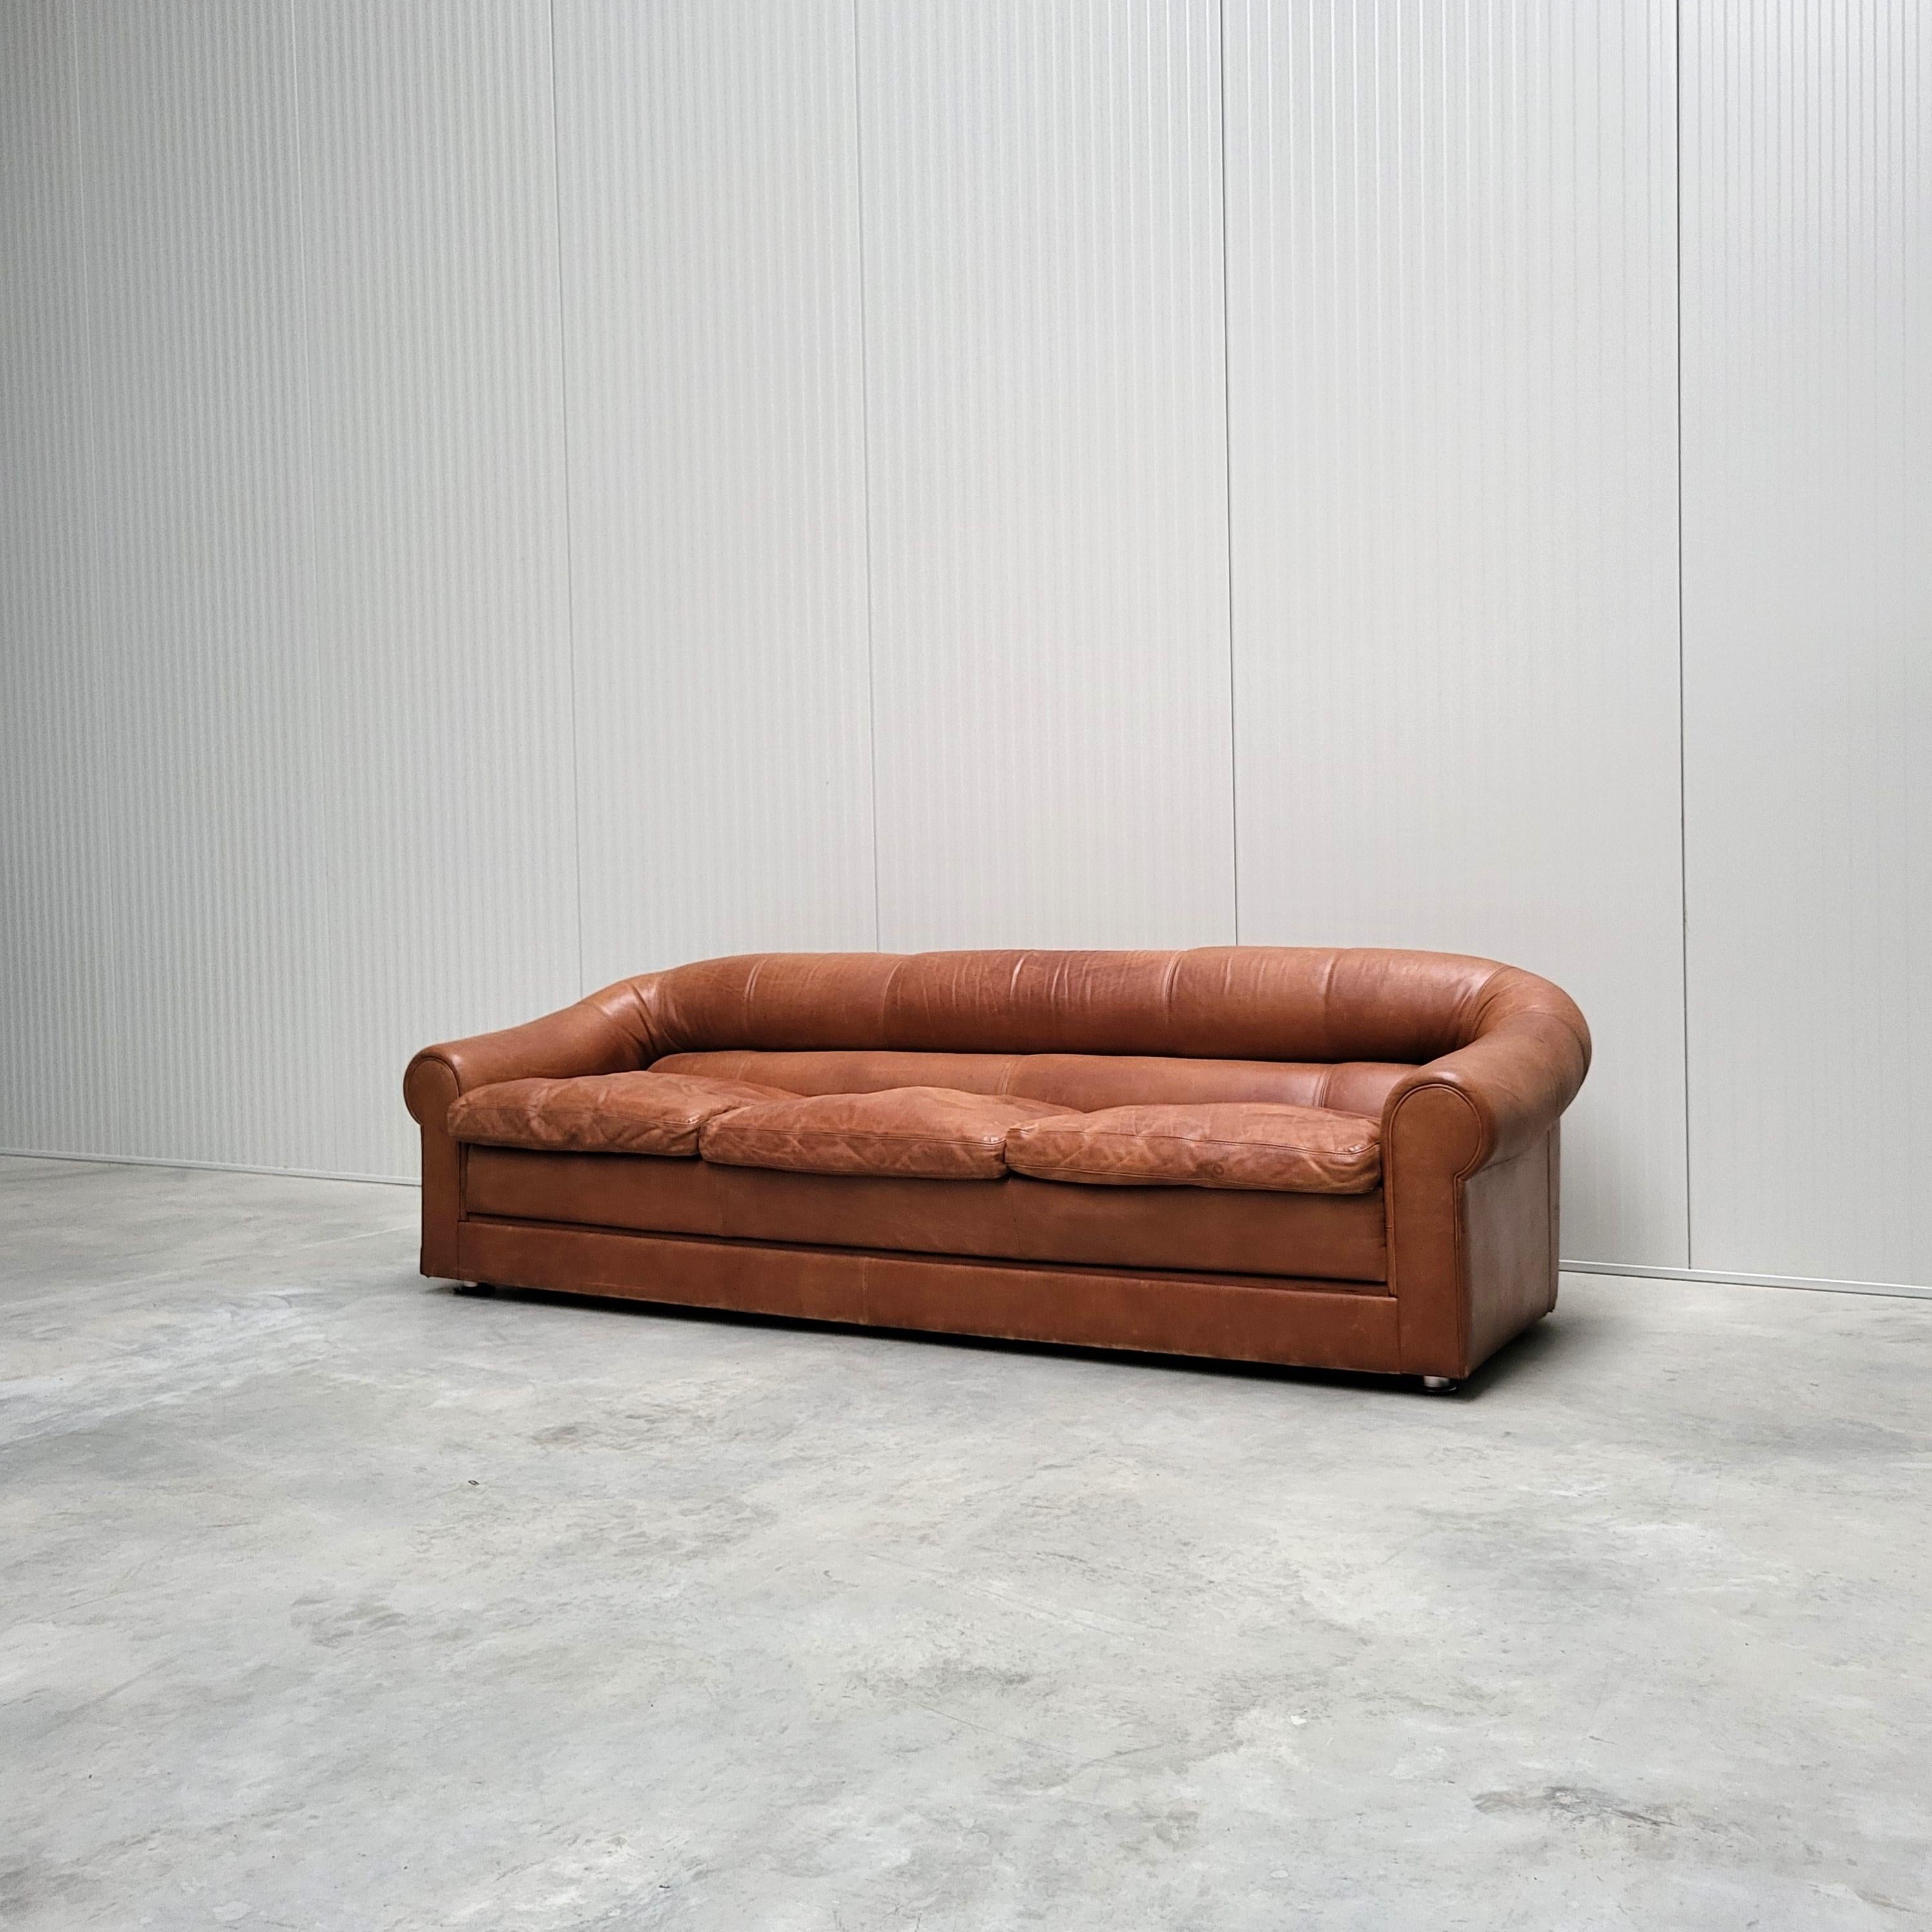 Dieses zeitlose, ikonische Sofa wurde in den 1970er Jahren in Italien nach dem Vorbild von Poltrona Frau oder De Sede hergestellt. 

Das Sofa ist mit einem erstaunlich glatten, mittelbraunen Leder gepolstert. 
Die Kissen sind mit Entenfedern